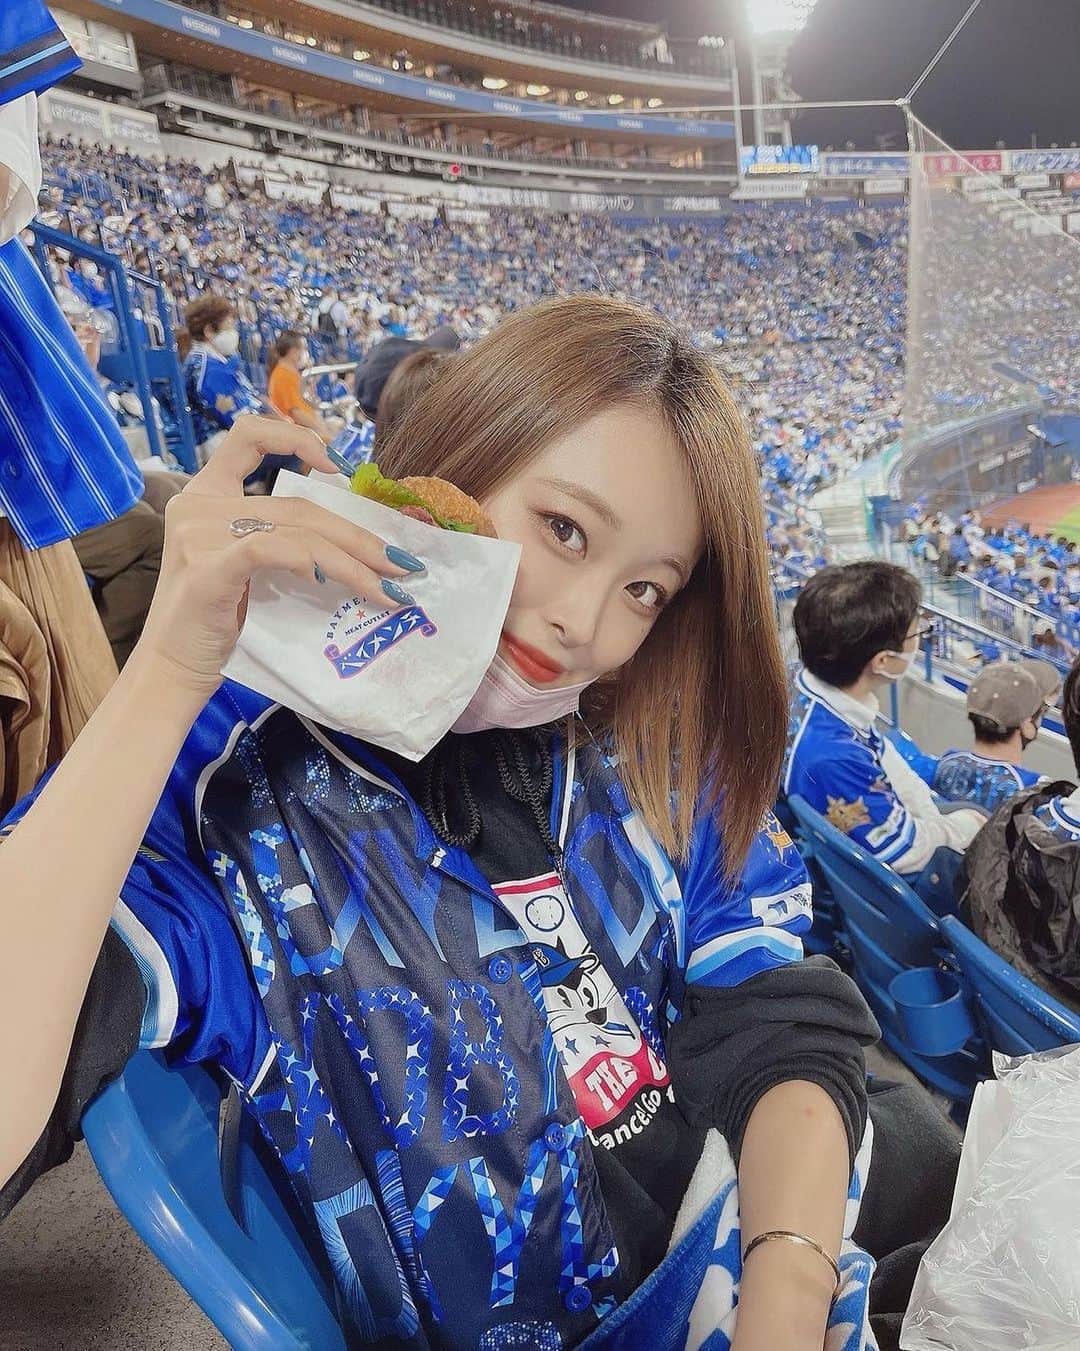 インスタ野球女子 公式アカウント さんのインスタグラム写真 インスタ野球女子 公式アカウント Instagram 今日は ベイスターズ女子 をご紹介していきます 素敵な美人さん ᵕᴗᵕ Yurika Shimazaki さんのアカウントも是非覗いて